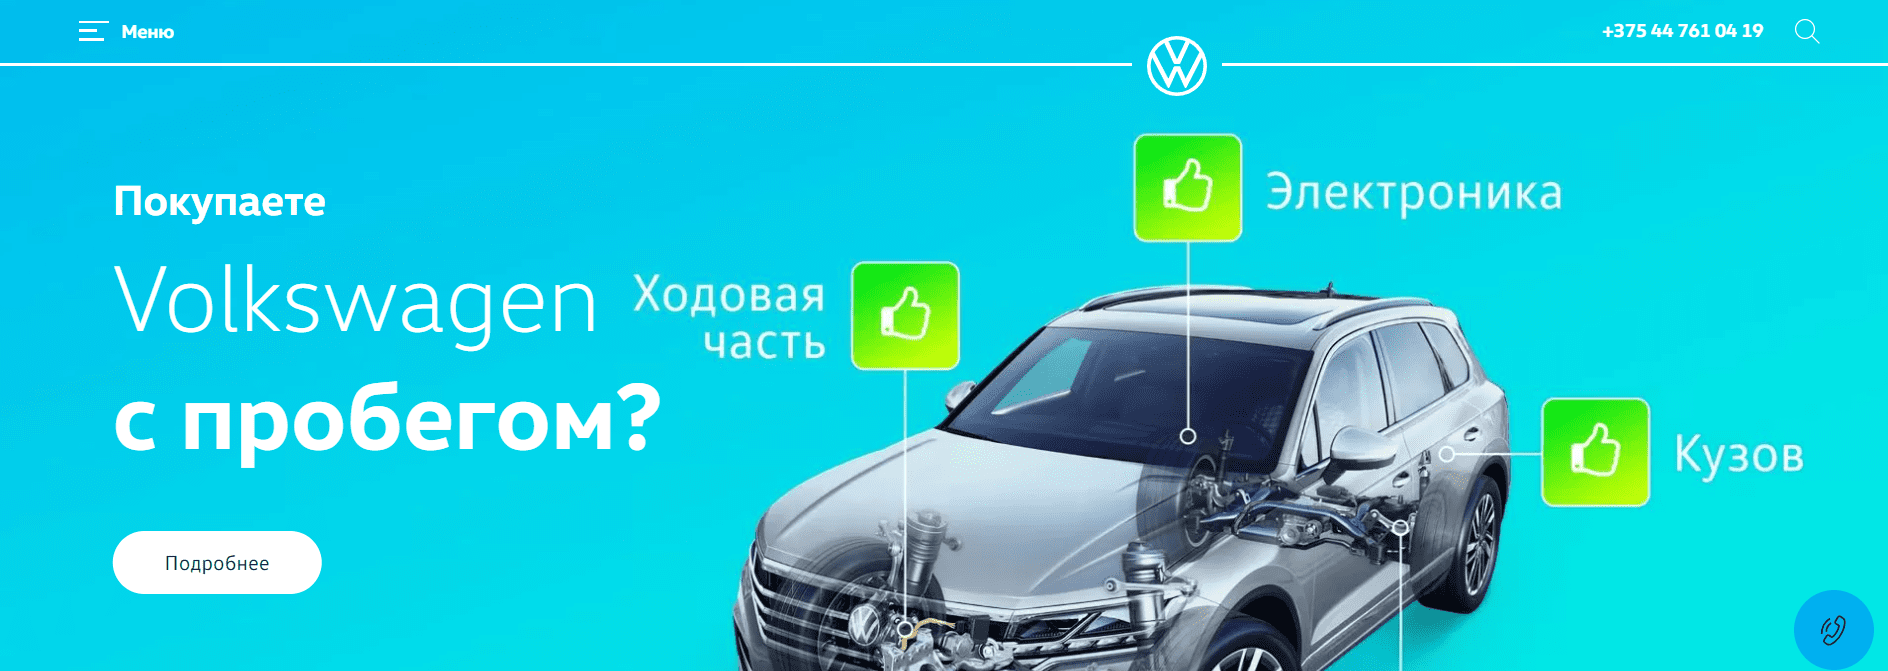 Автомобили Volkswagen (volkswagen-minsk.by) - официальный сайт